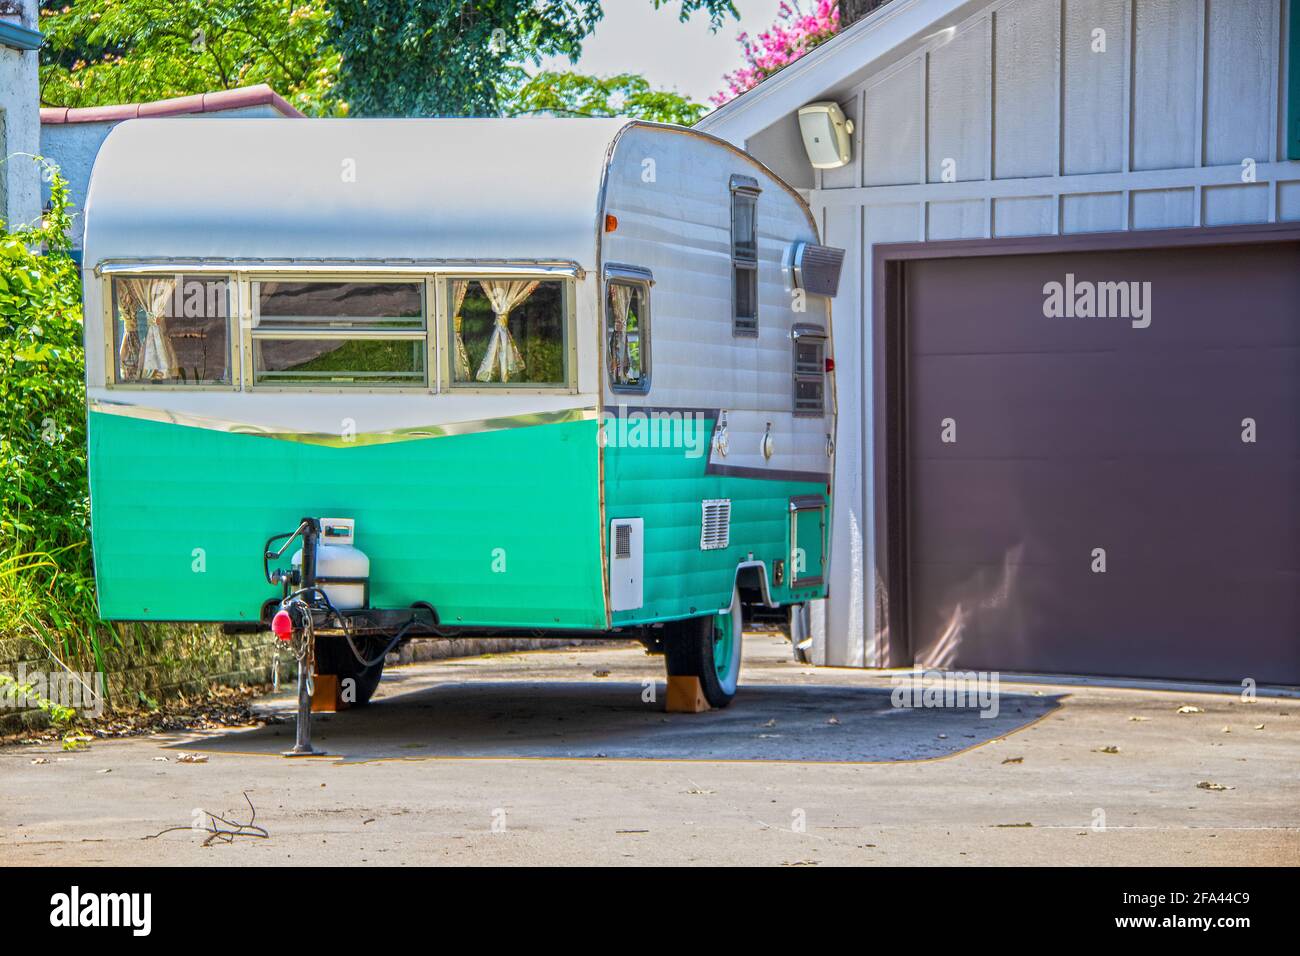 Remorque de camping turquoise et blanc vintage garée à côté de la porte de garage Banque D'Images